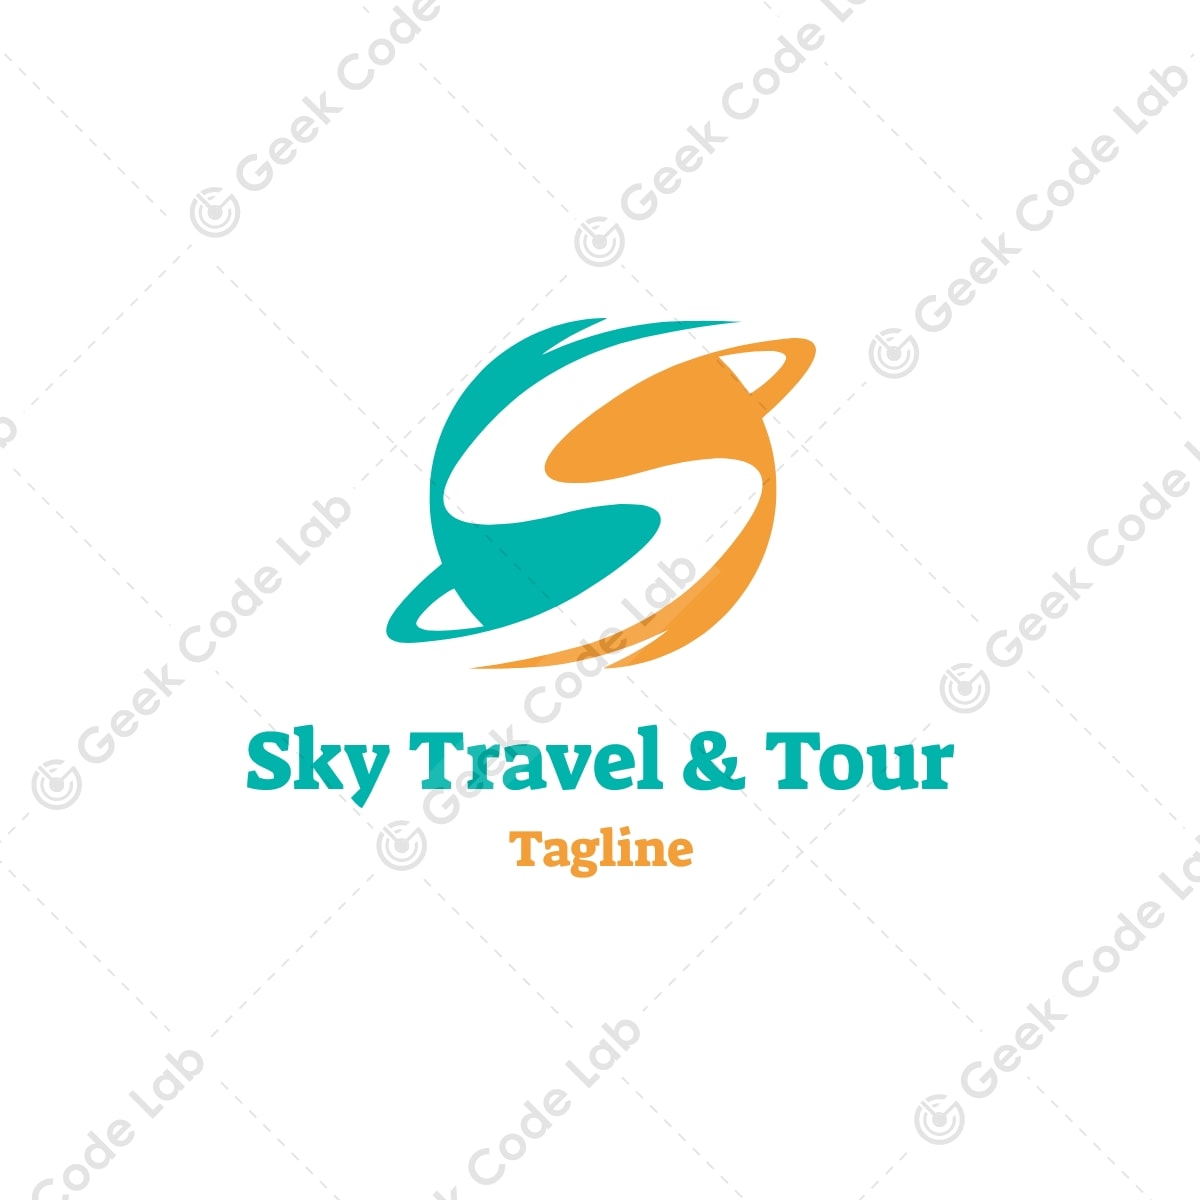 Sky Travel & Tour